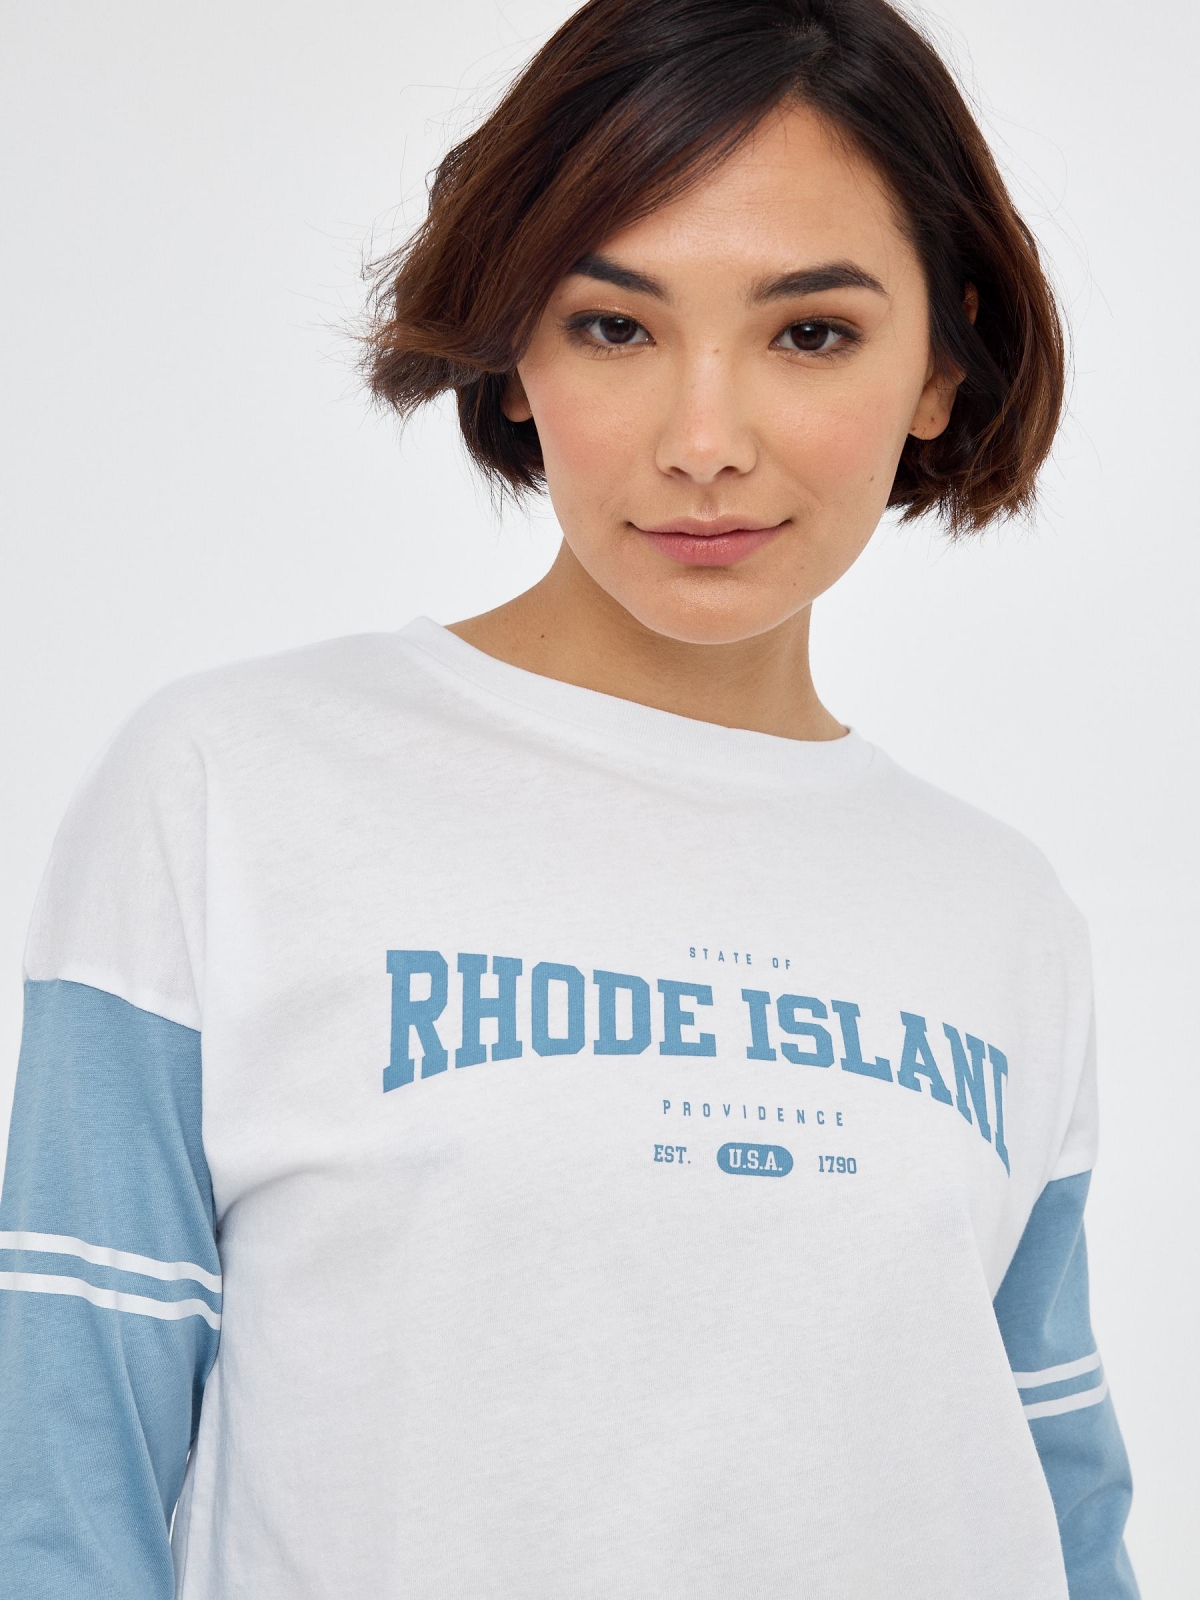 Rhode Island T-shirt steel blue foreground